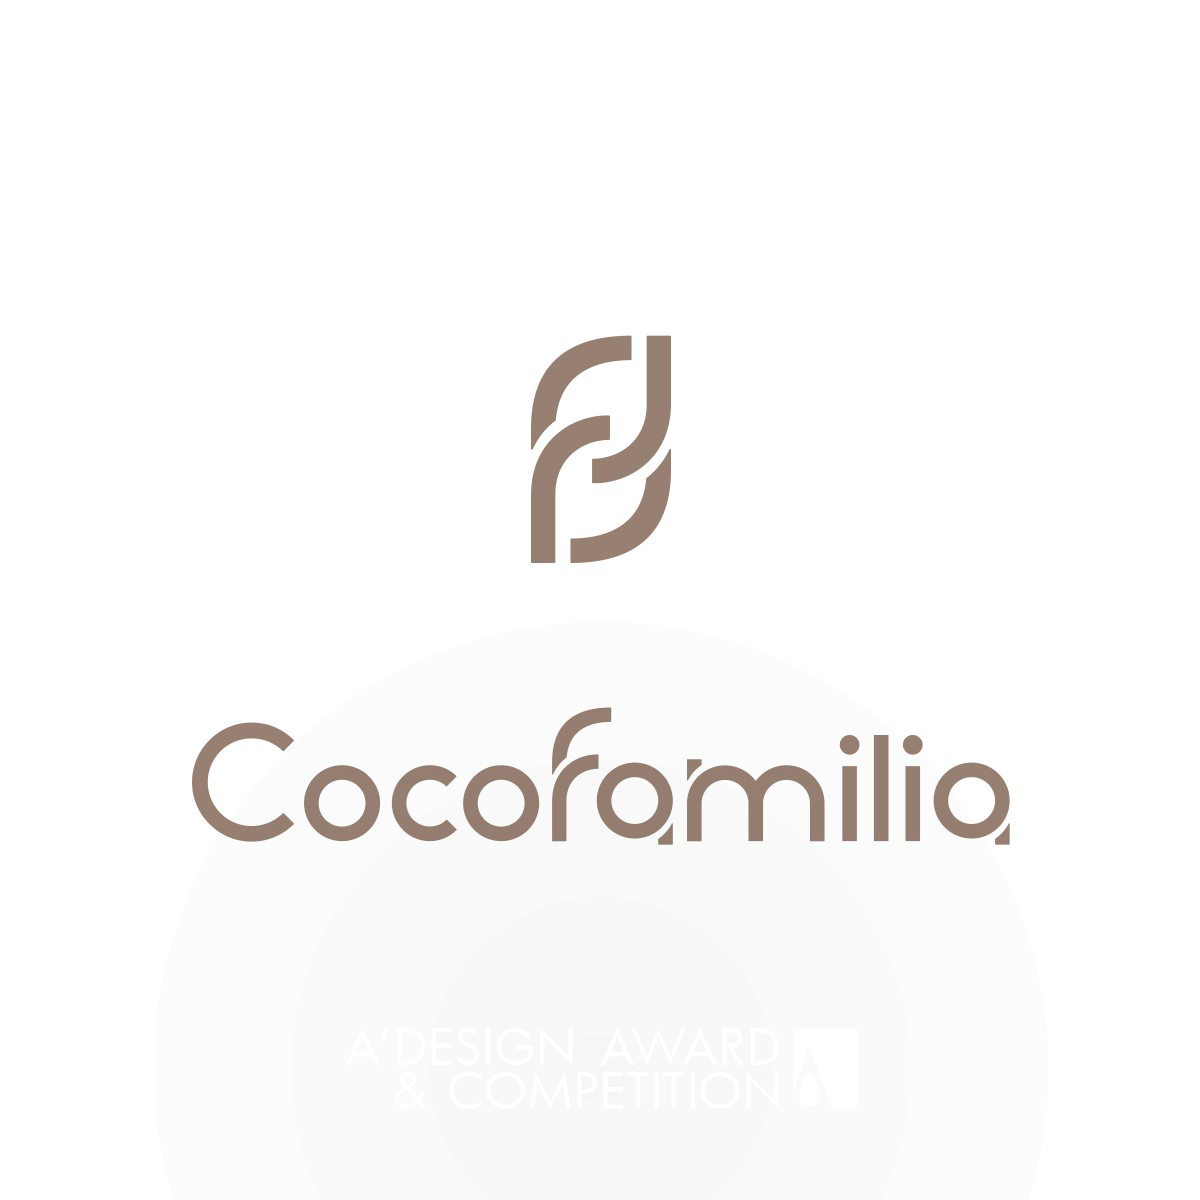 Cocofamilia <b>Logo and VI